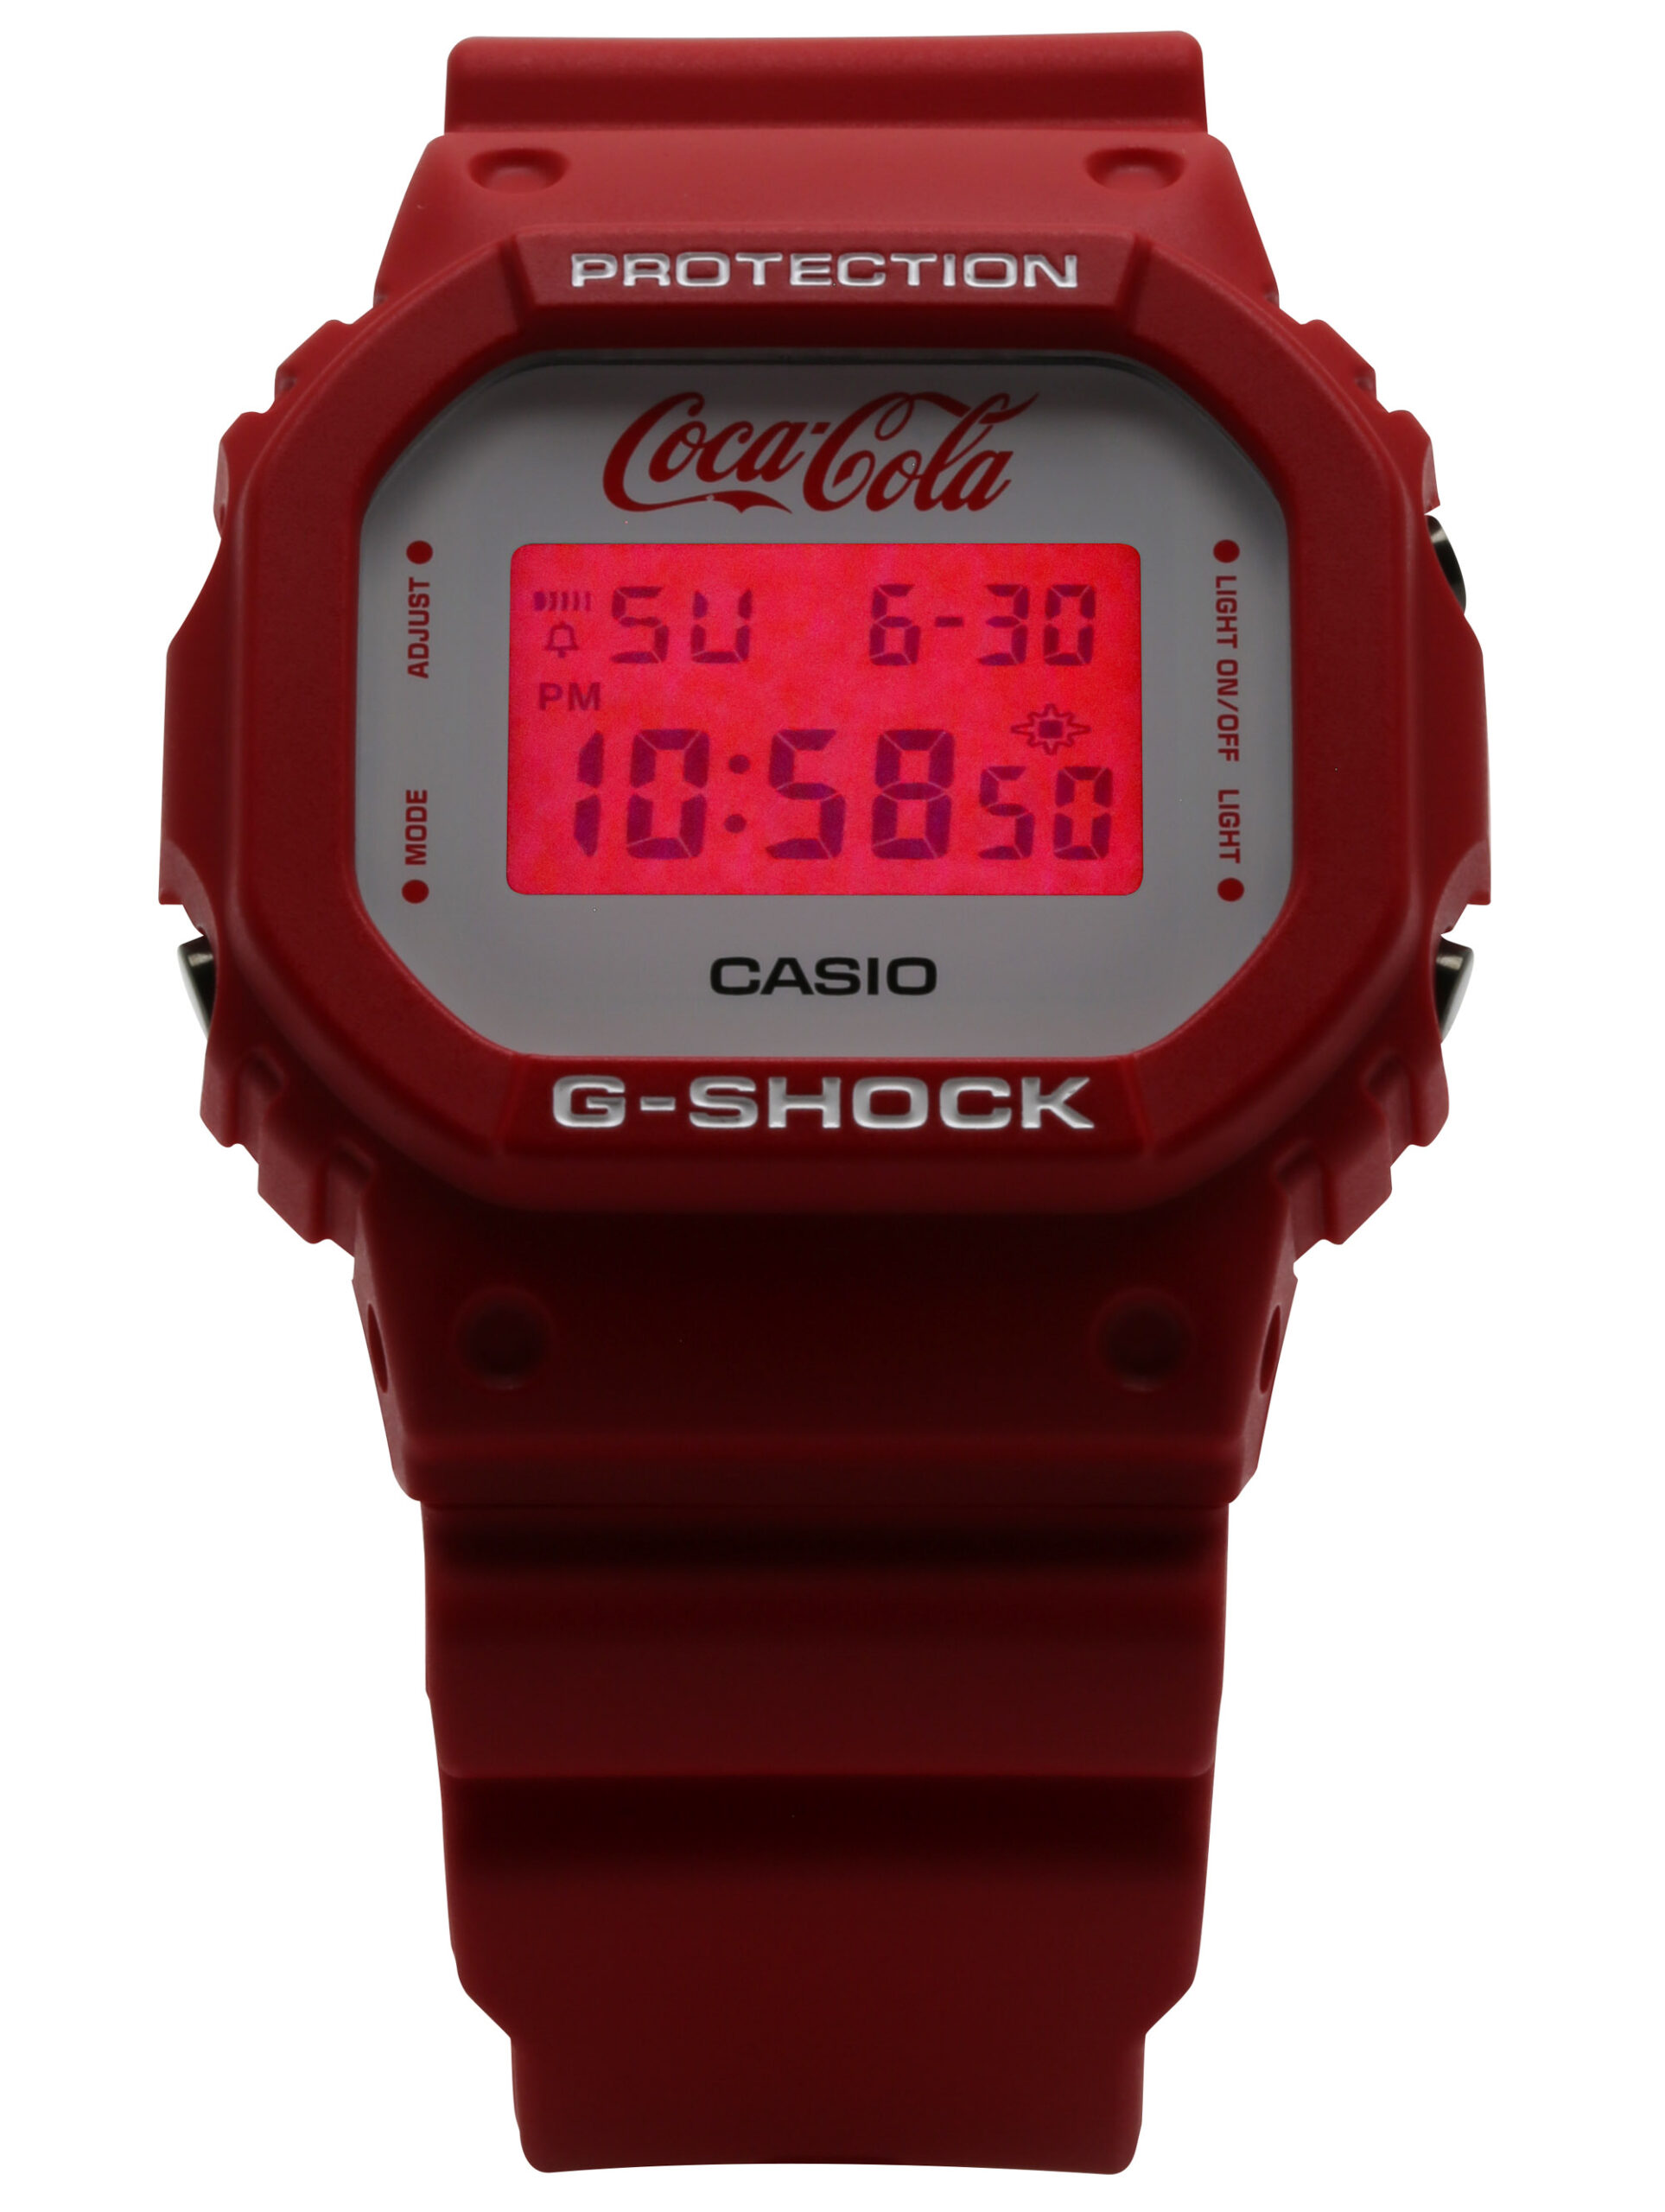 Новый релиз: Лимитированные часы Casio G-Shock X Coca-Cola